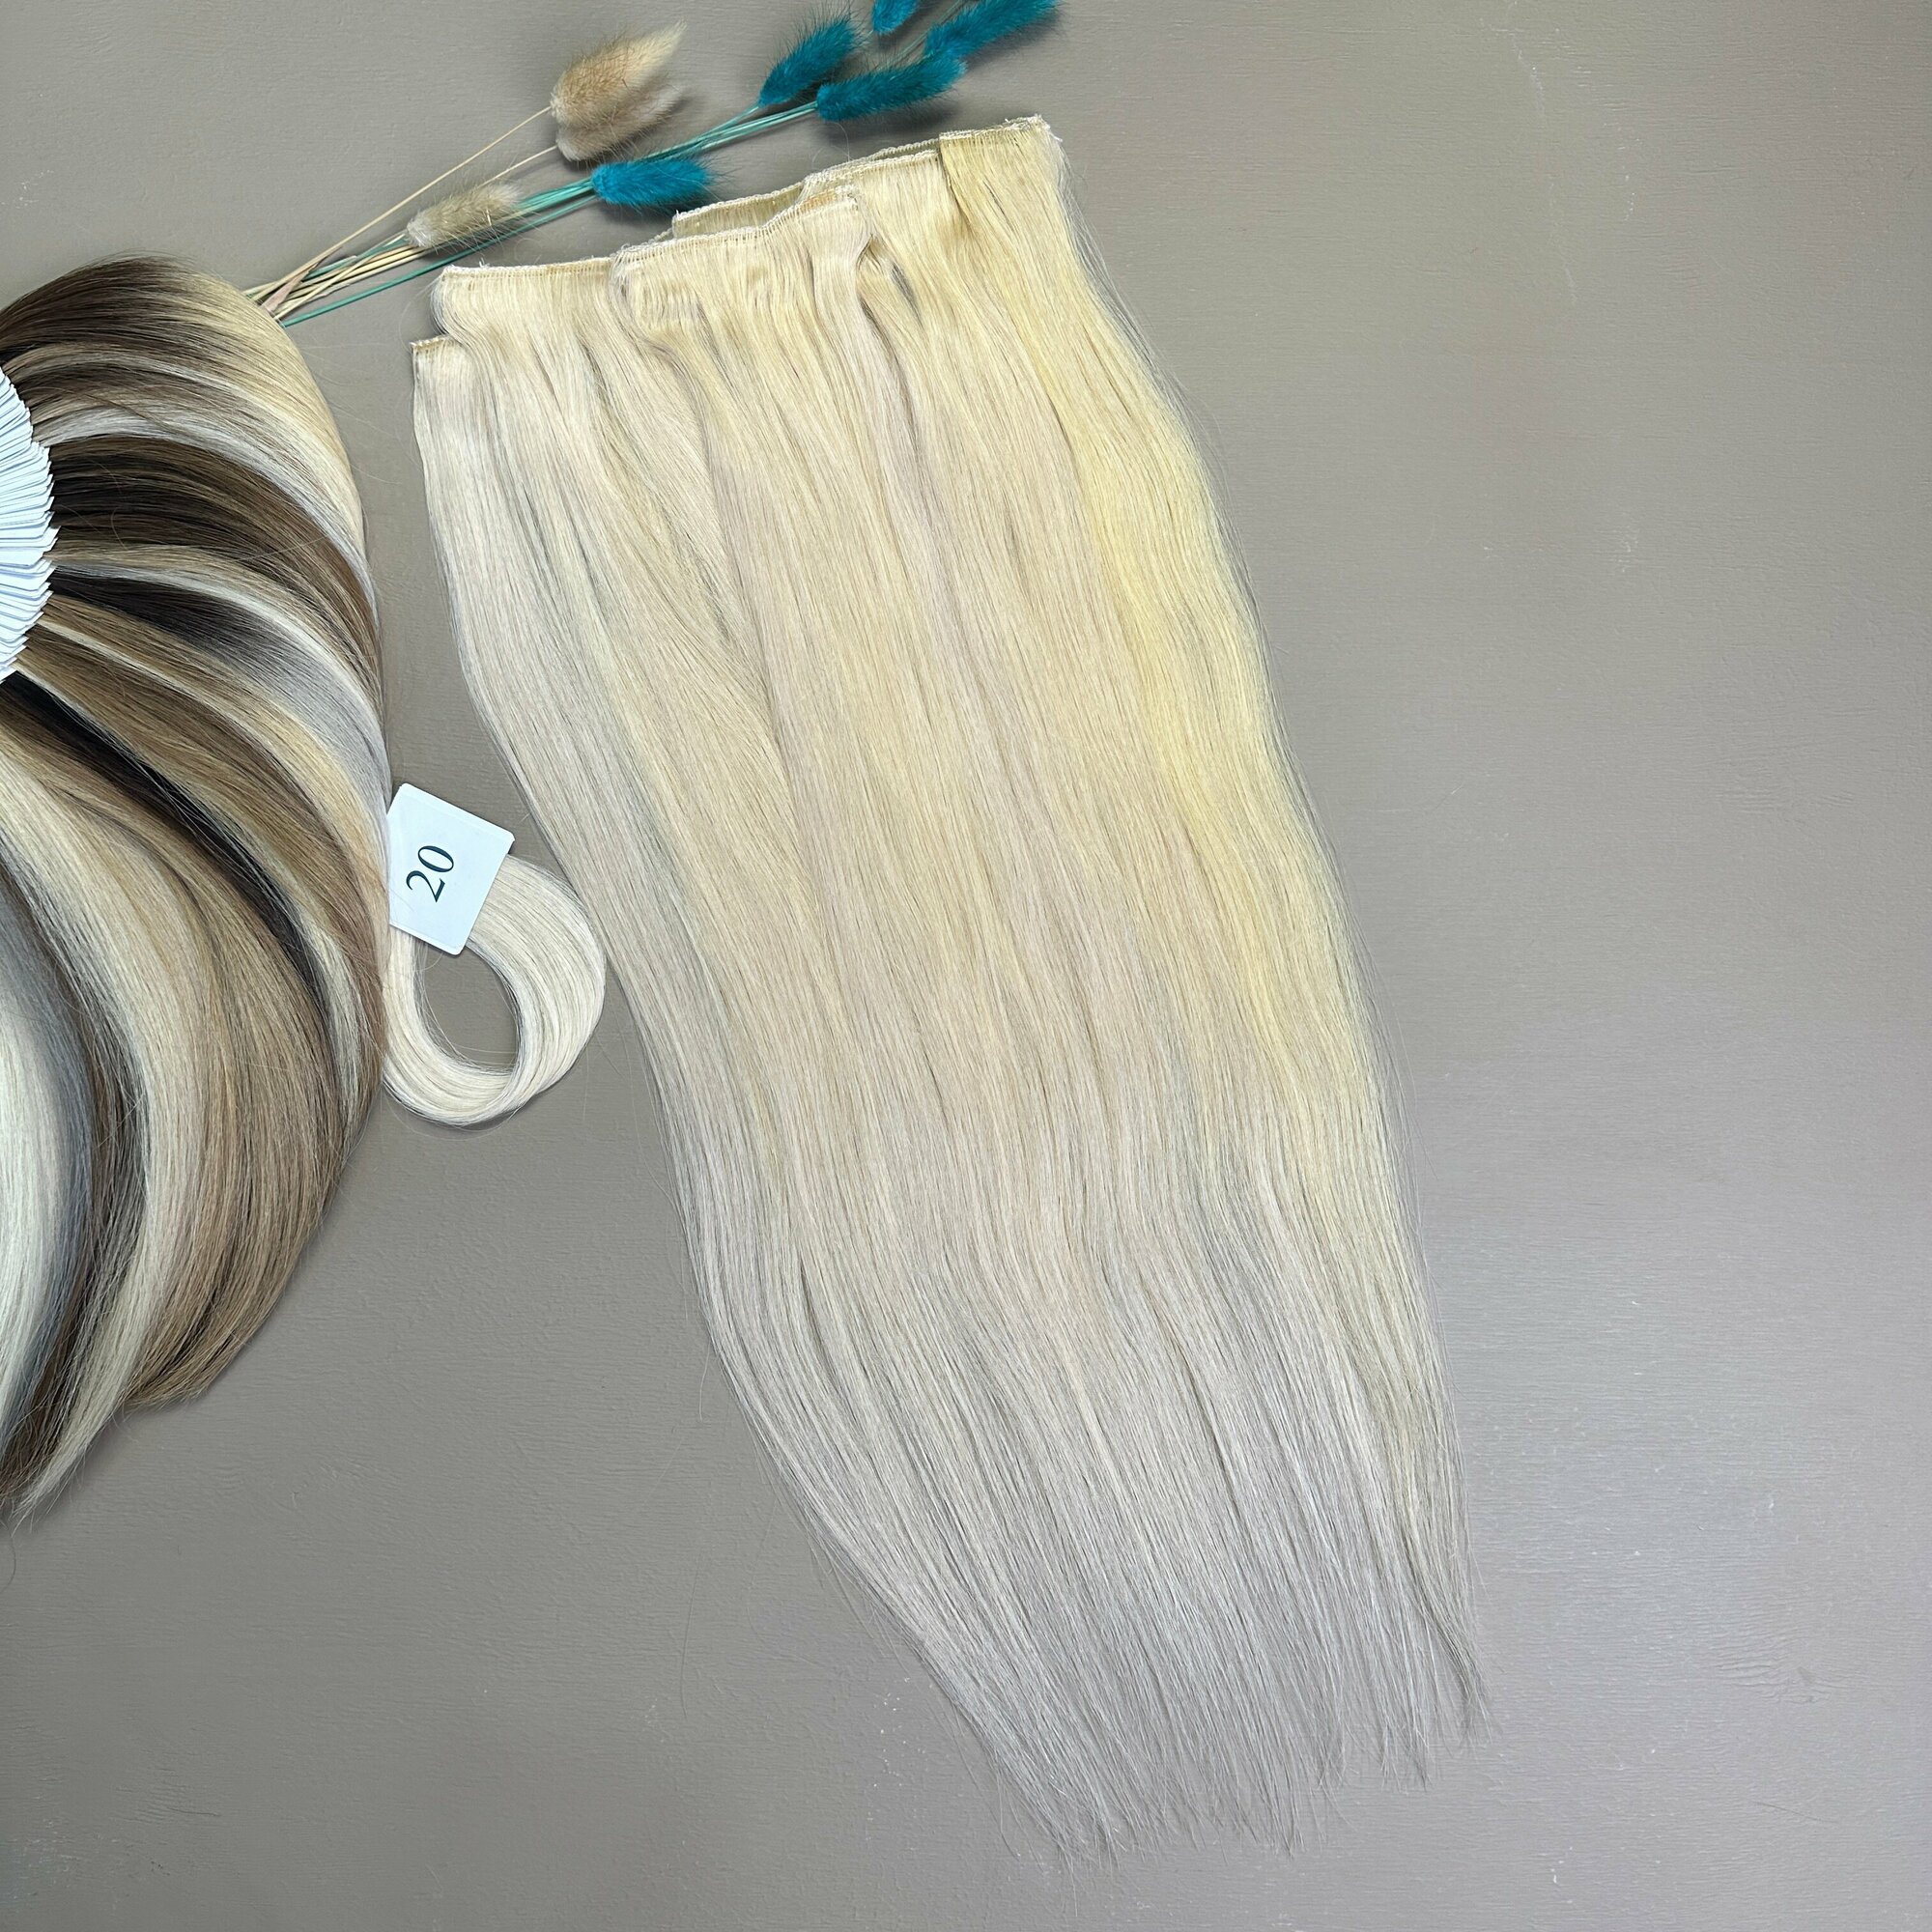 Волосы на заколках Belli Capelli европейская линия 50 см №20 (набор из 7 заколок)